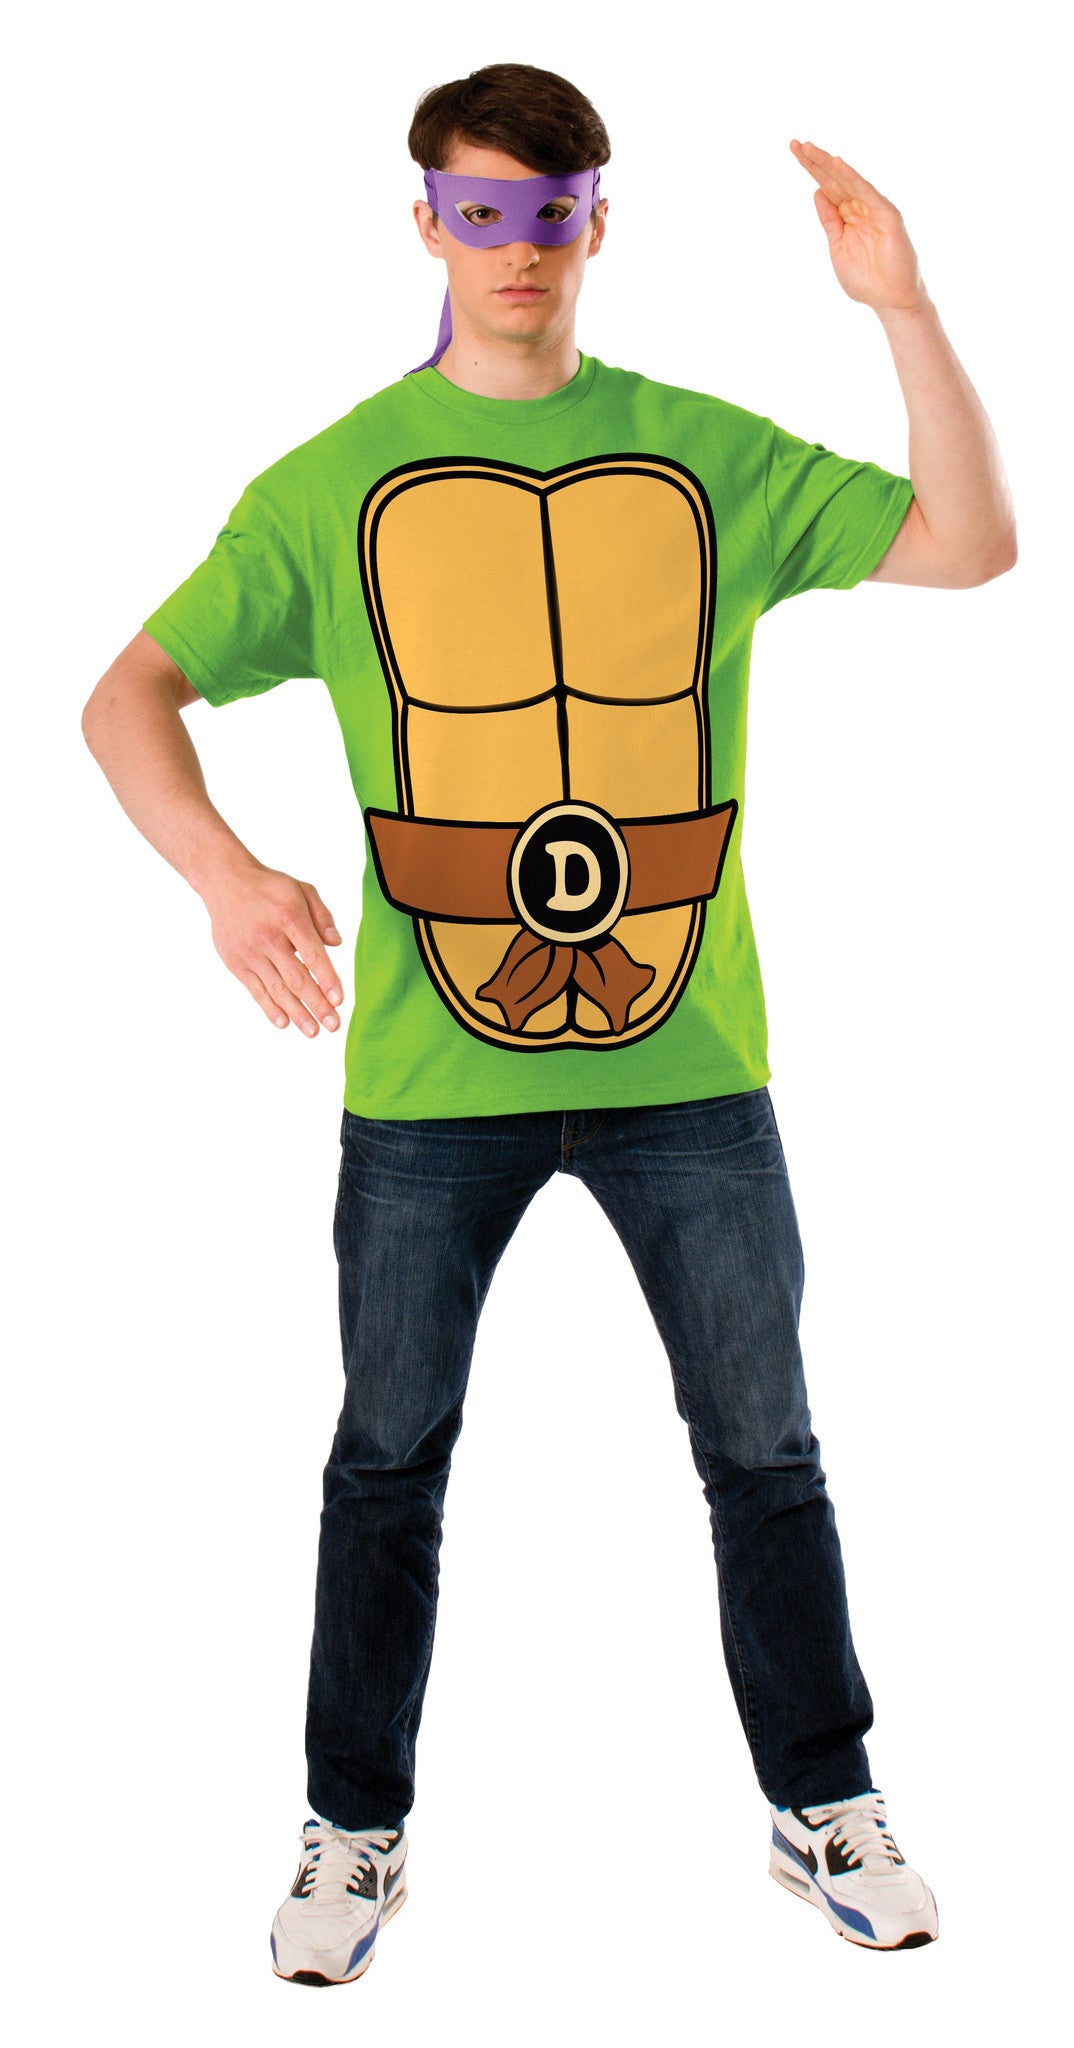 Fantasia Donatello Tartaruga Ninja-Boys Donatello Muscle Costume Tee